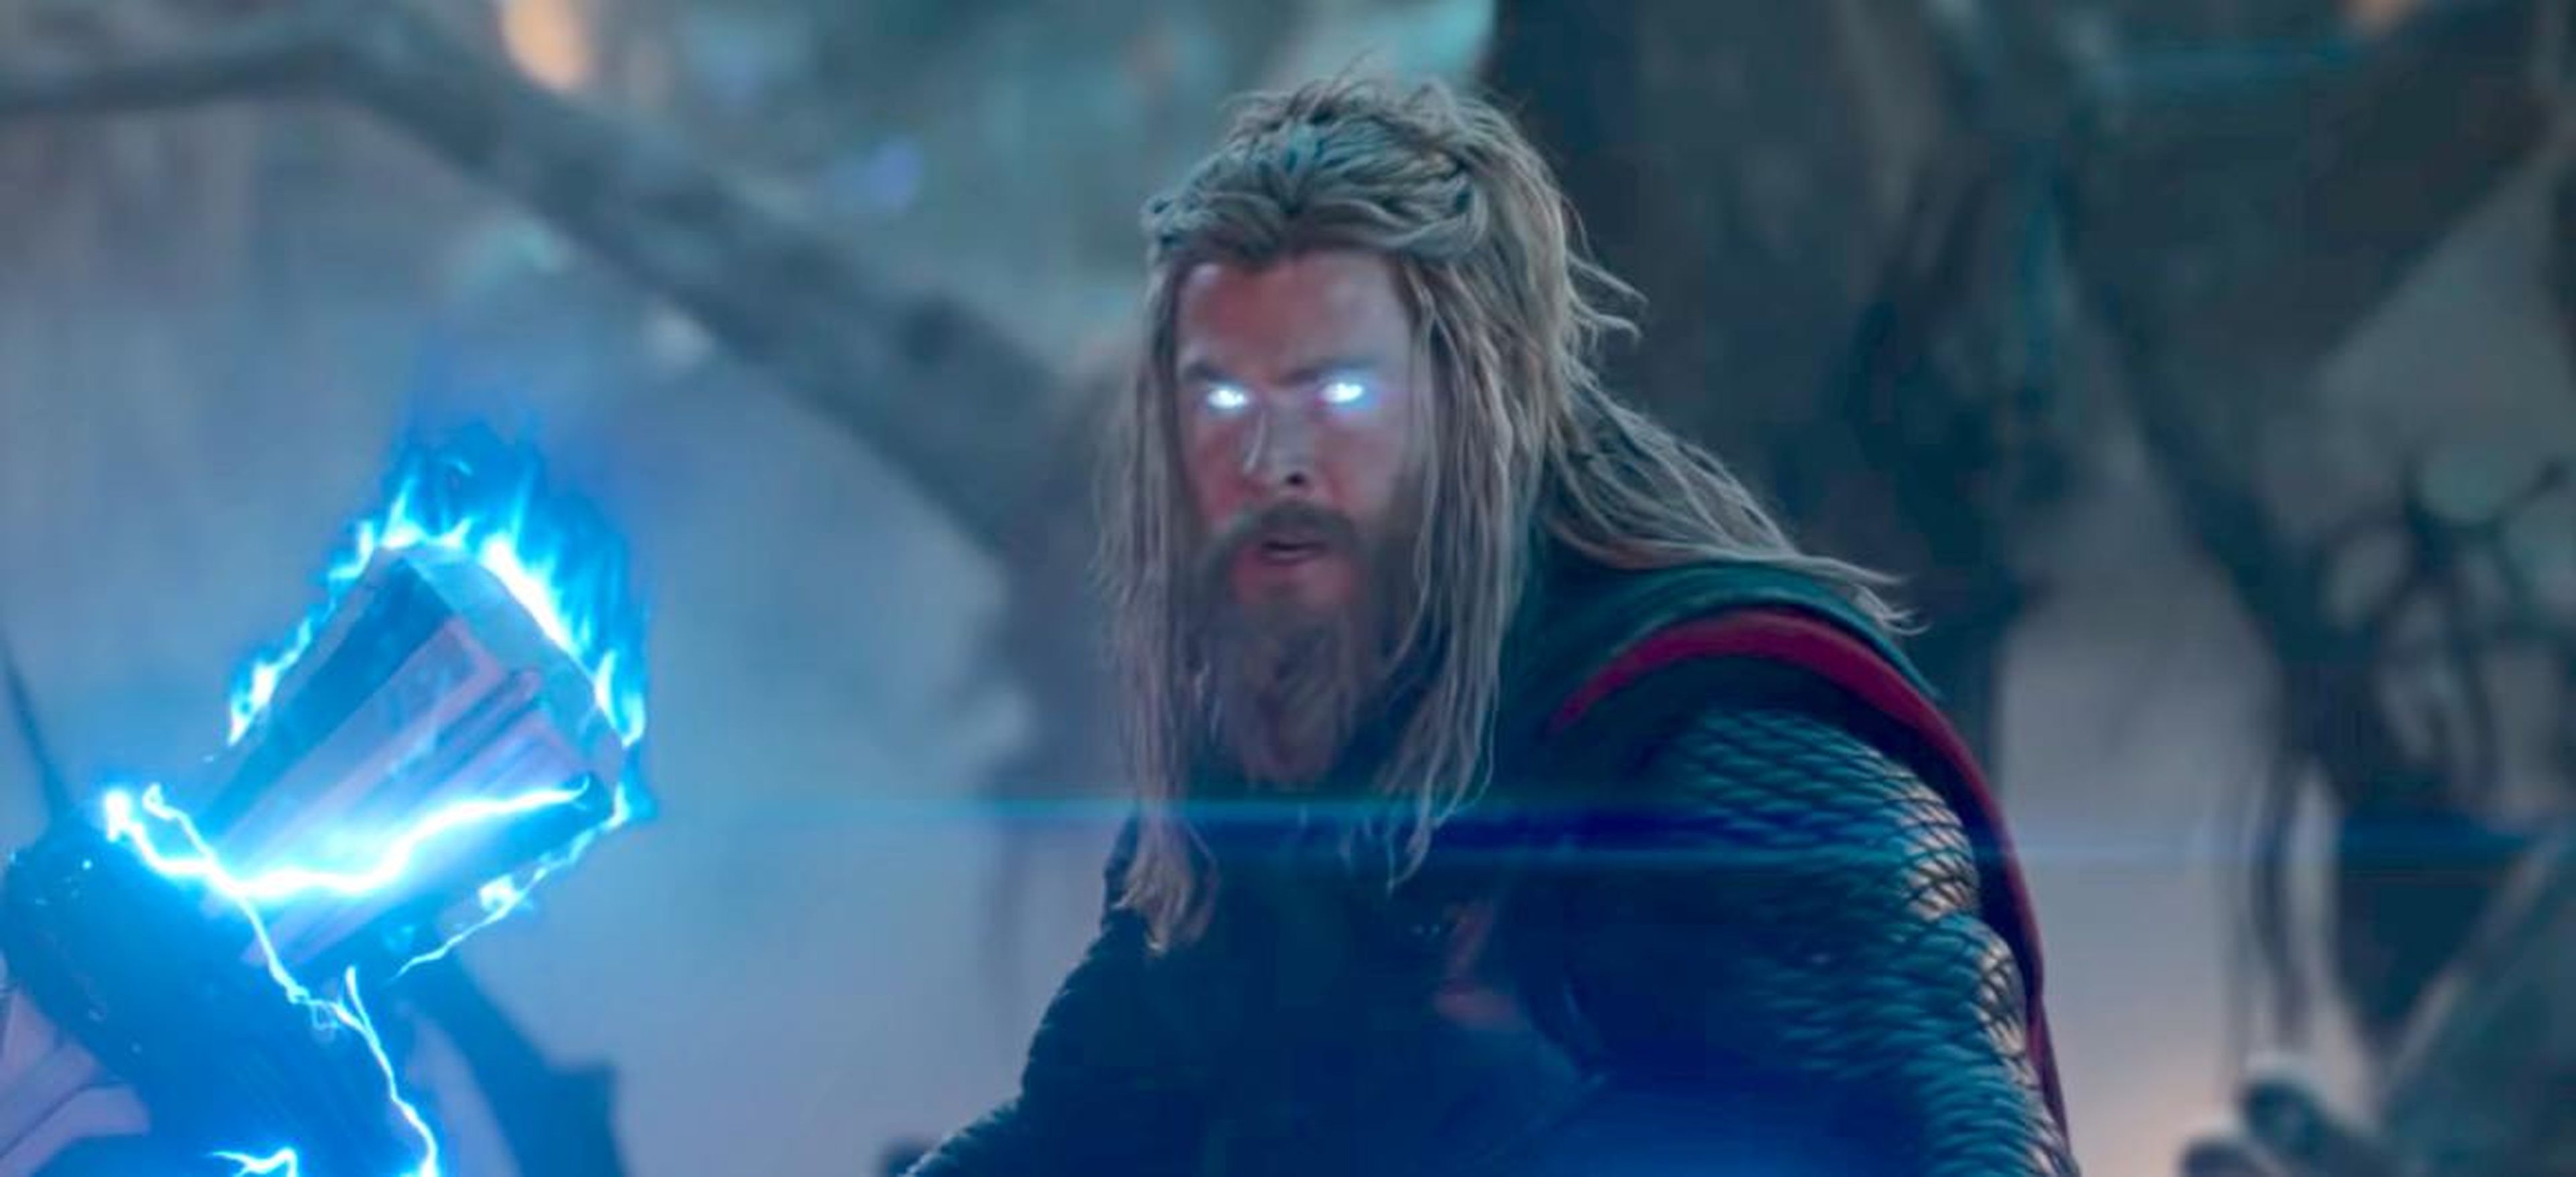 Chris Hemsworth en su papel de Thor, en la película "Avengers: Endgame".